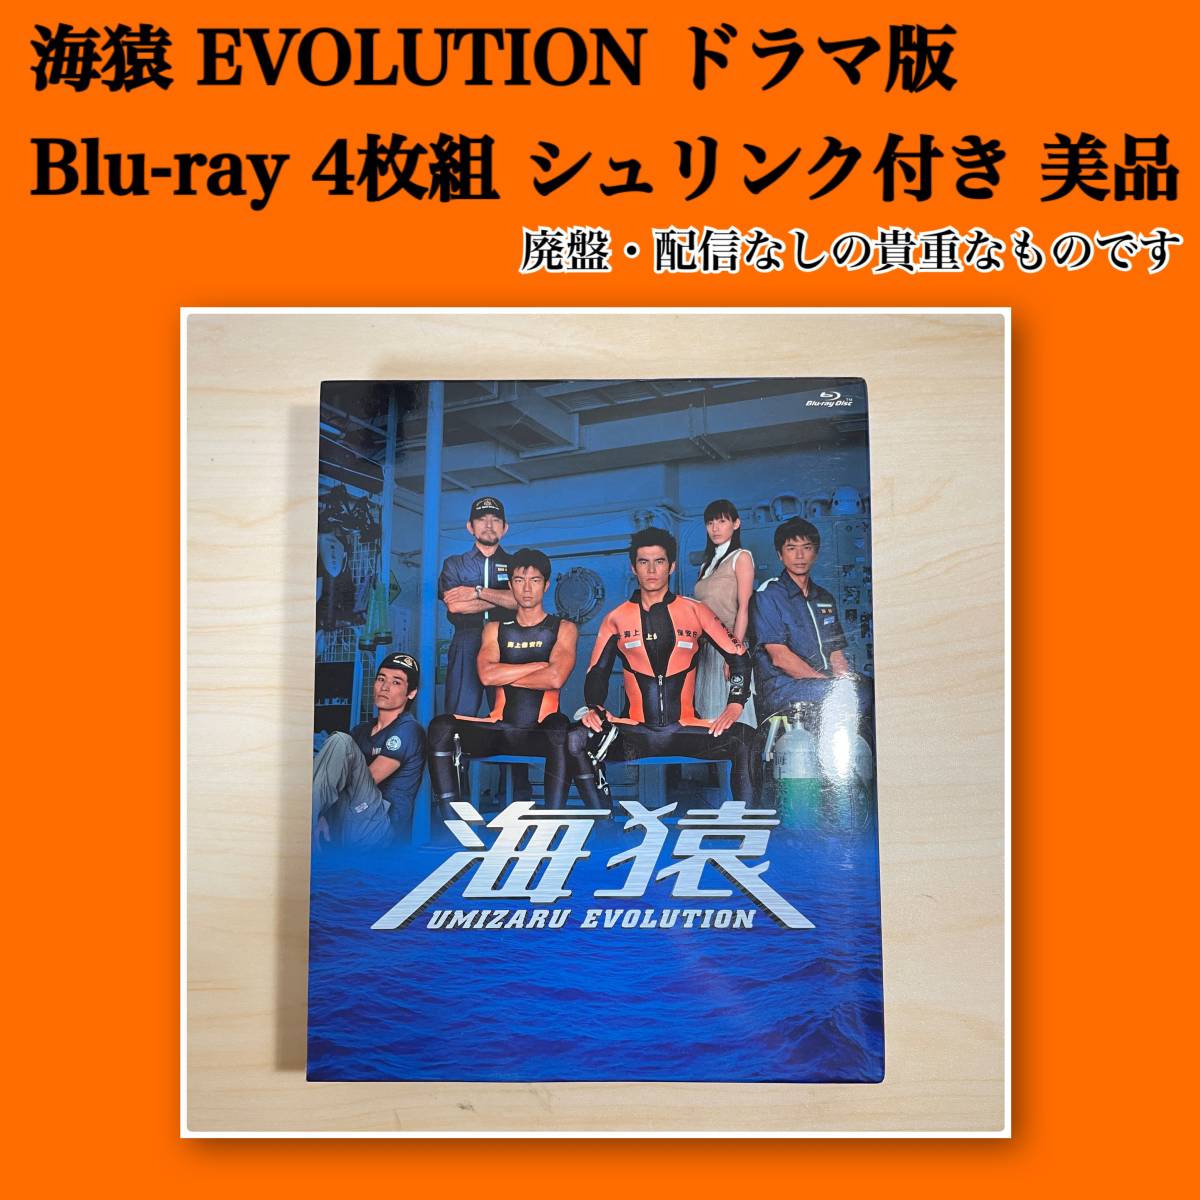 海猿 UMIZARU EVOLUTIONドラマ版 Blu-ray 4枚組